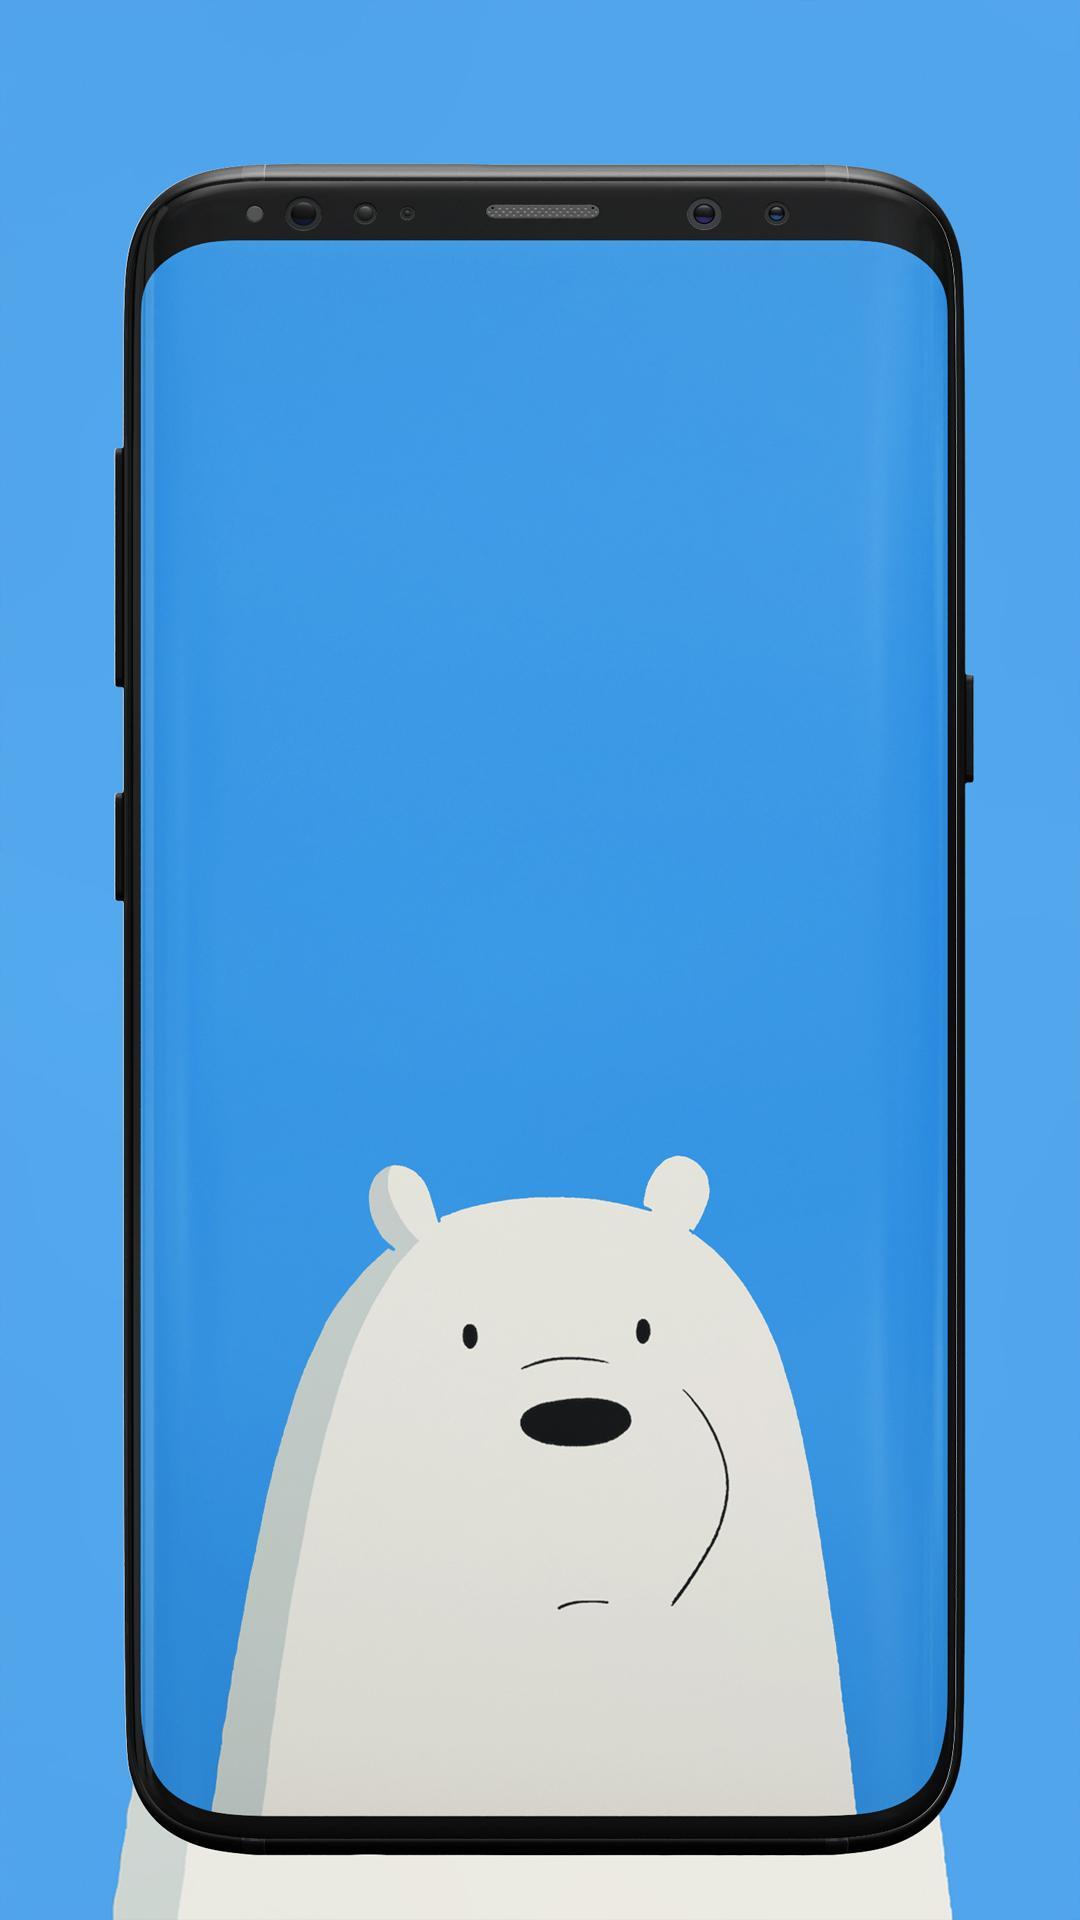 Wallpaper Beruang Lucu For Android Apk Download